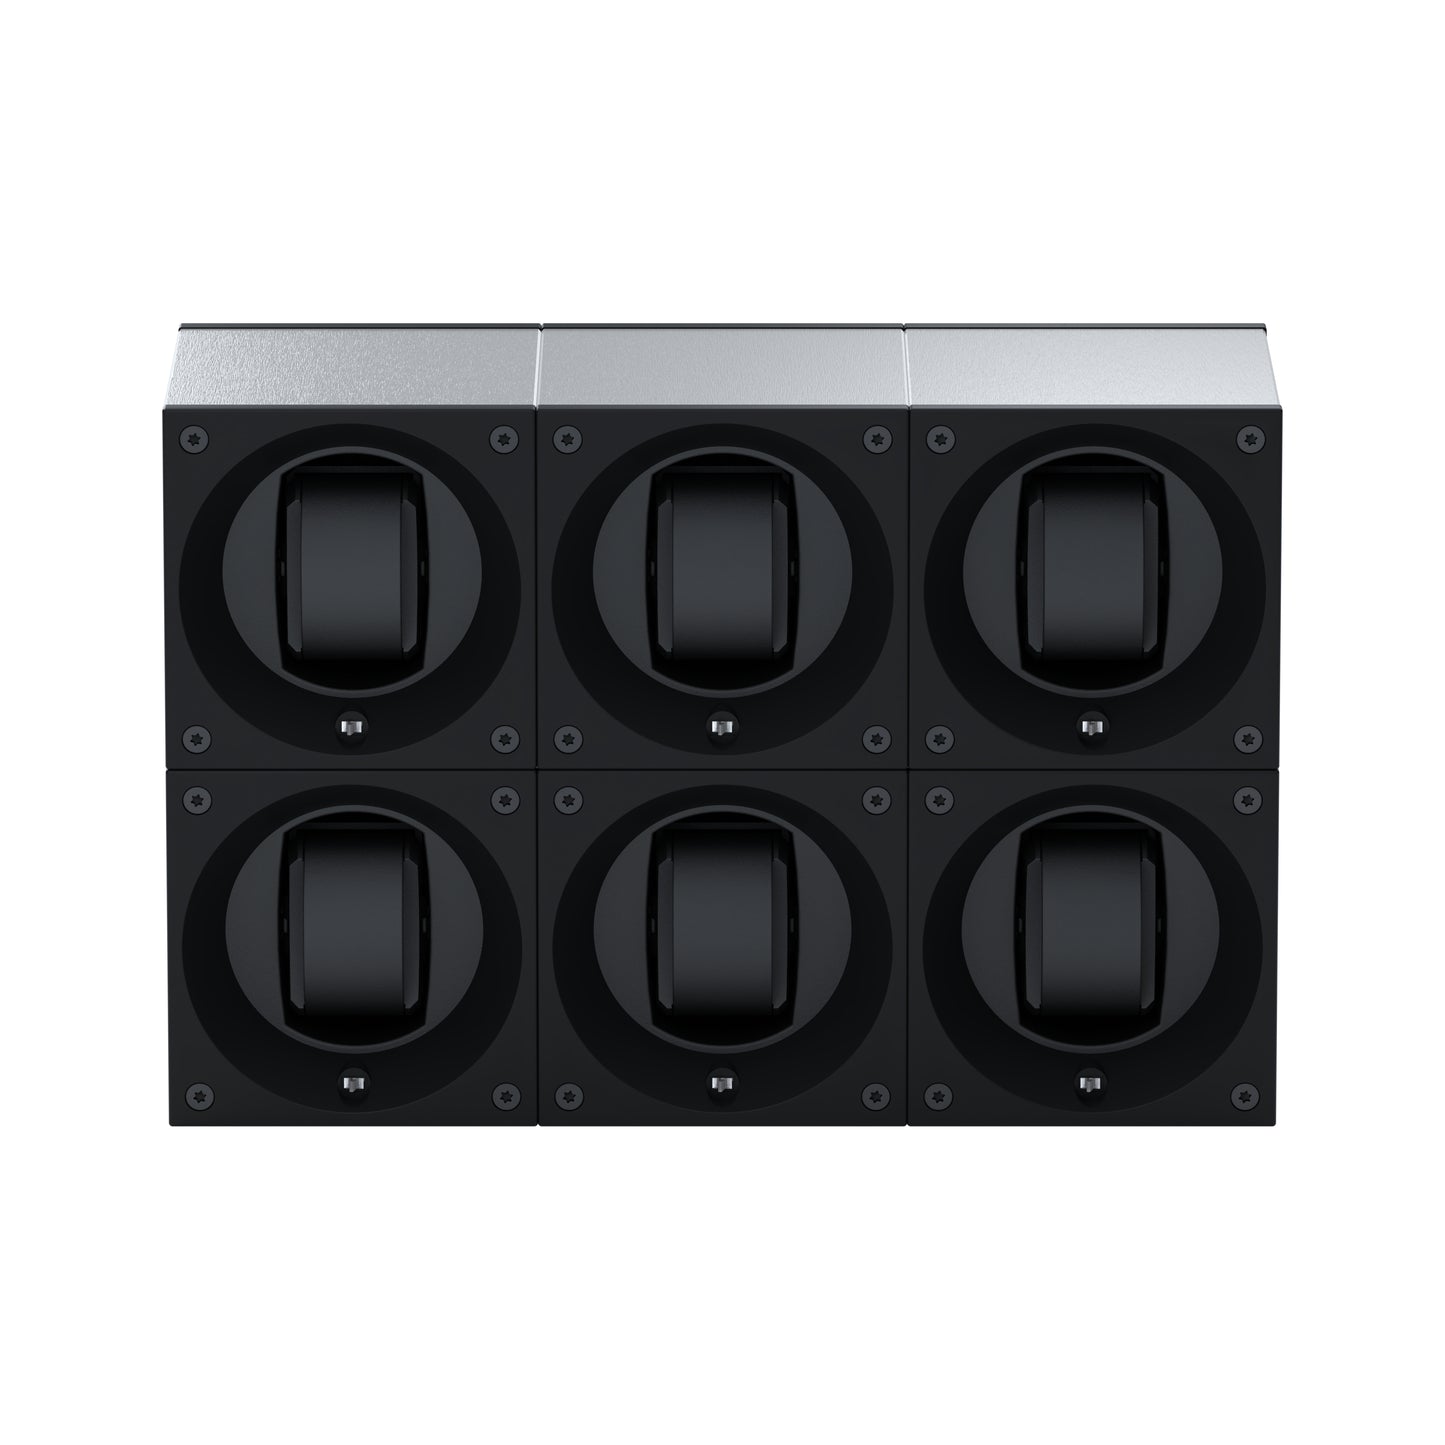 Masterbox 6 montres Aluminium Brossé : écrin rotatif pour montre automatique